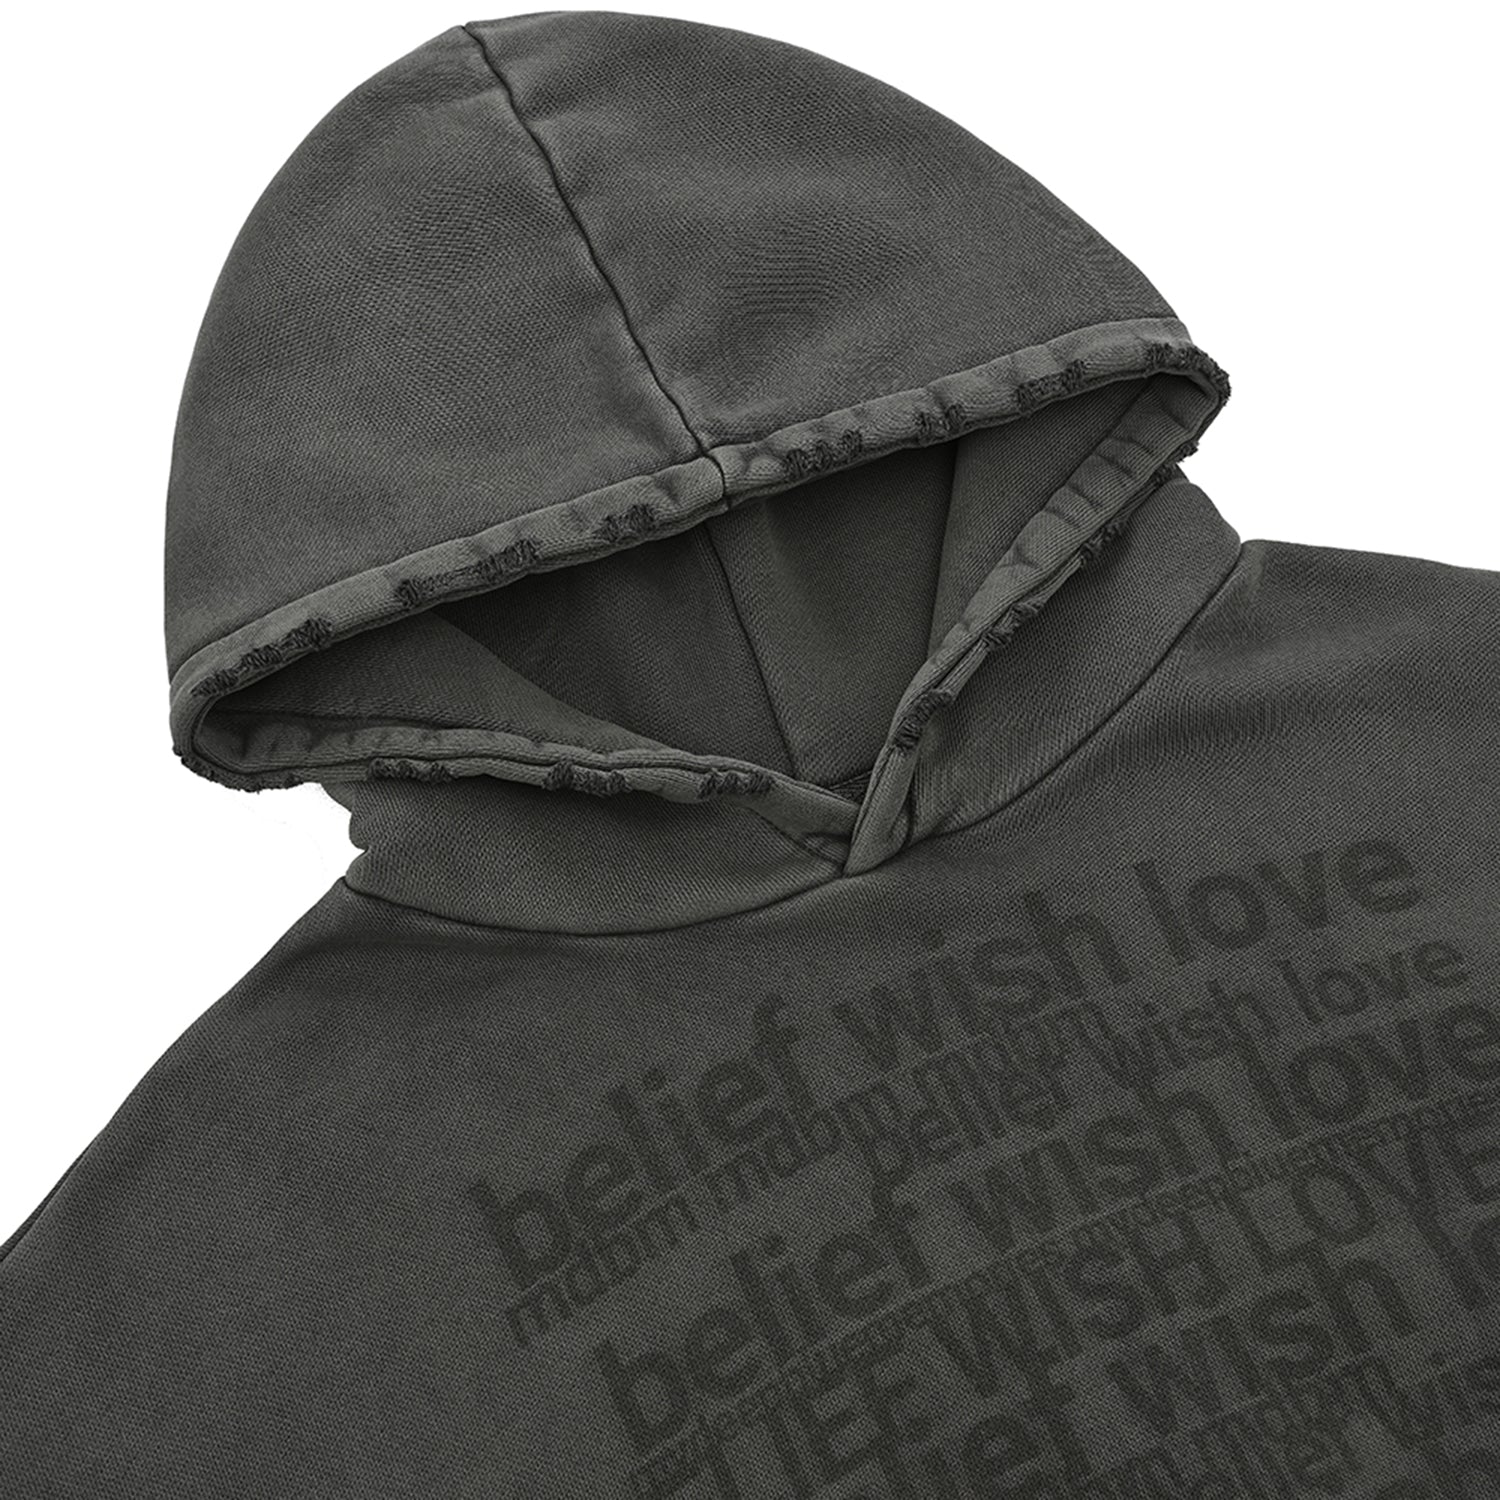  "belief" "wish" "love" hoodie